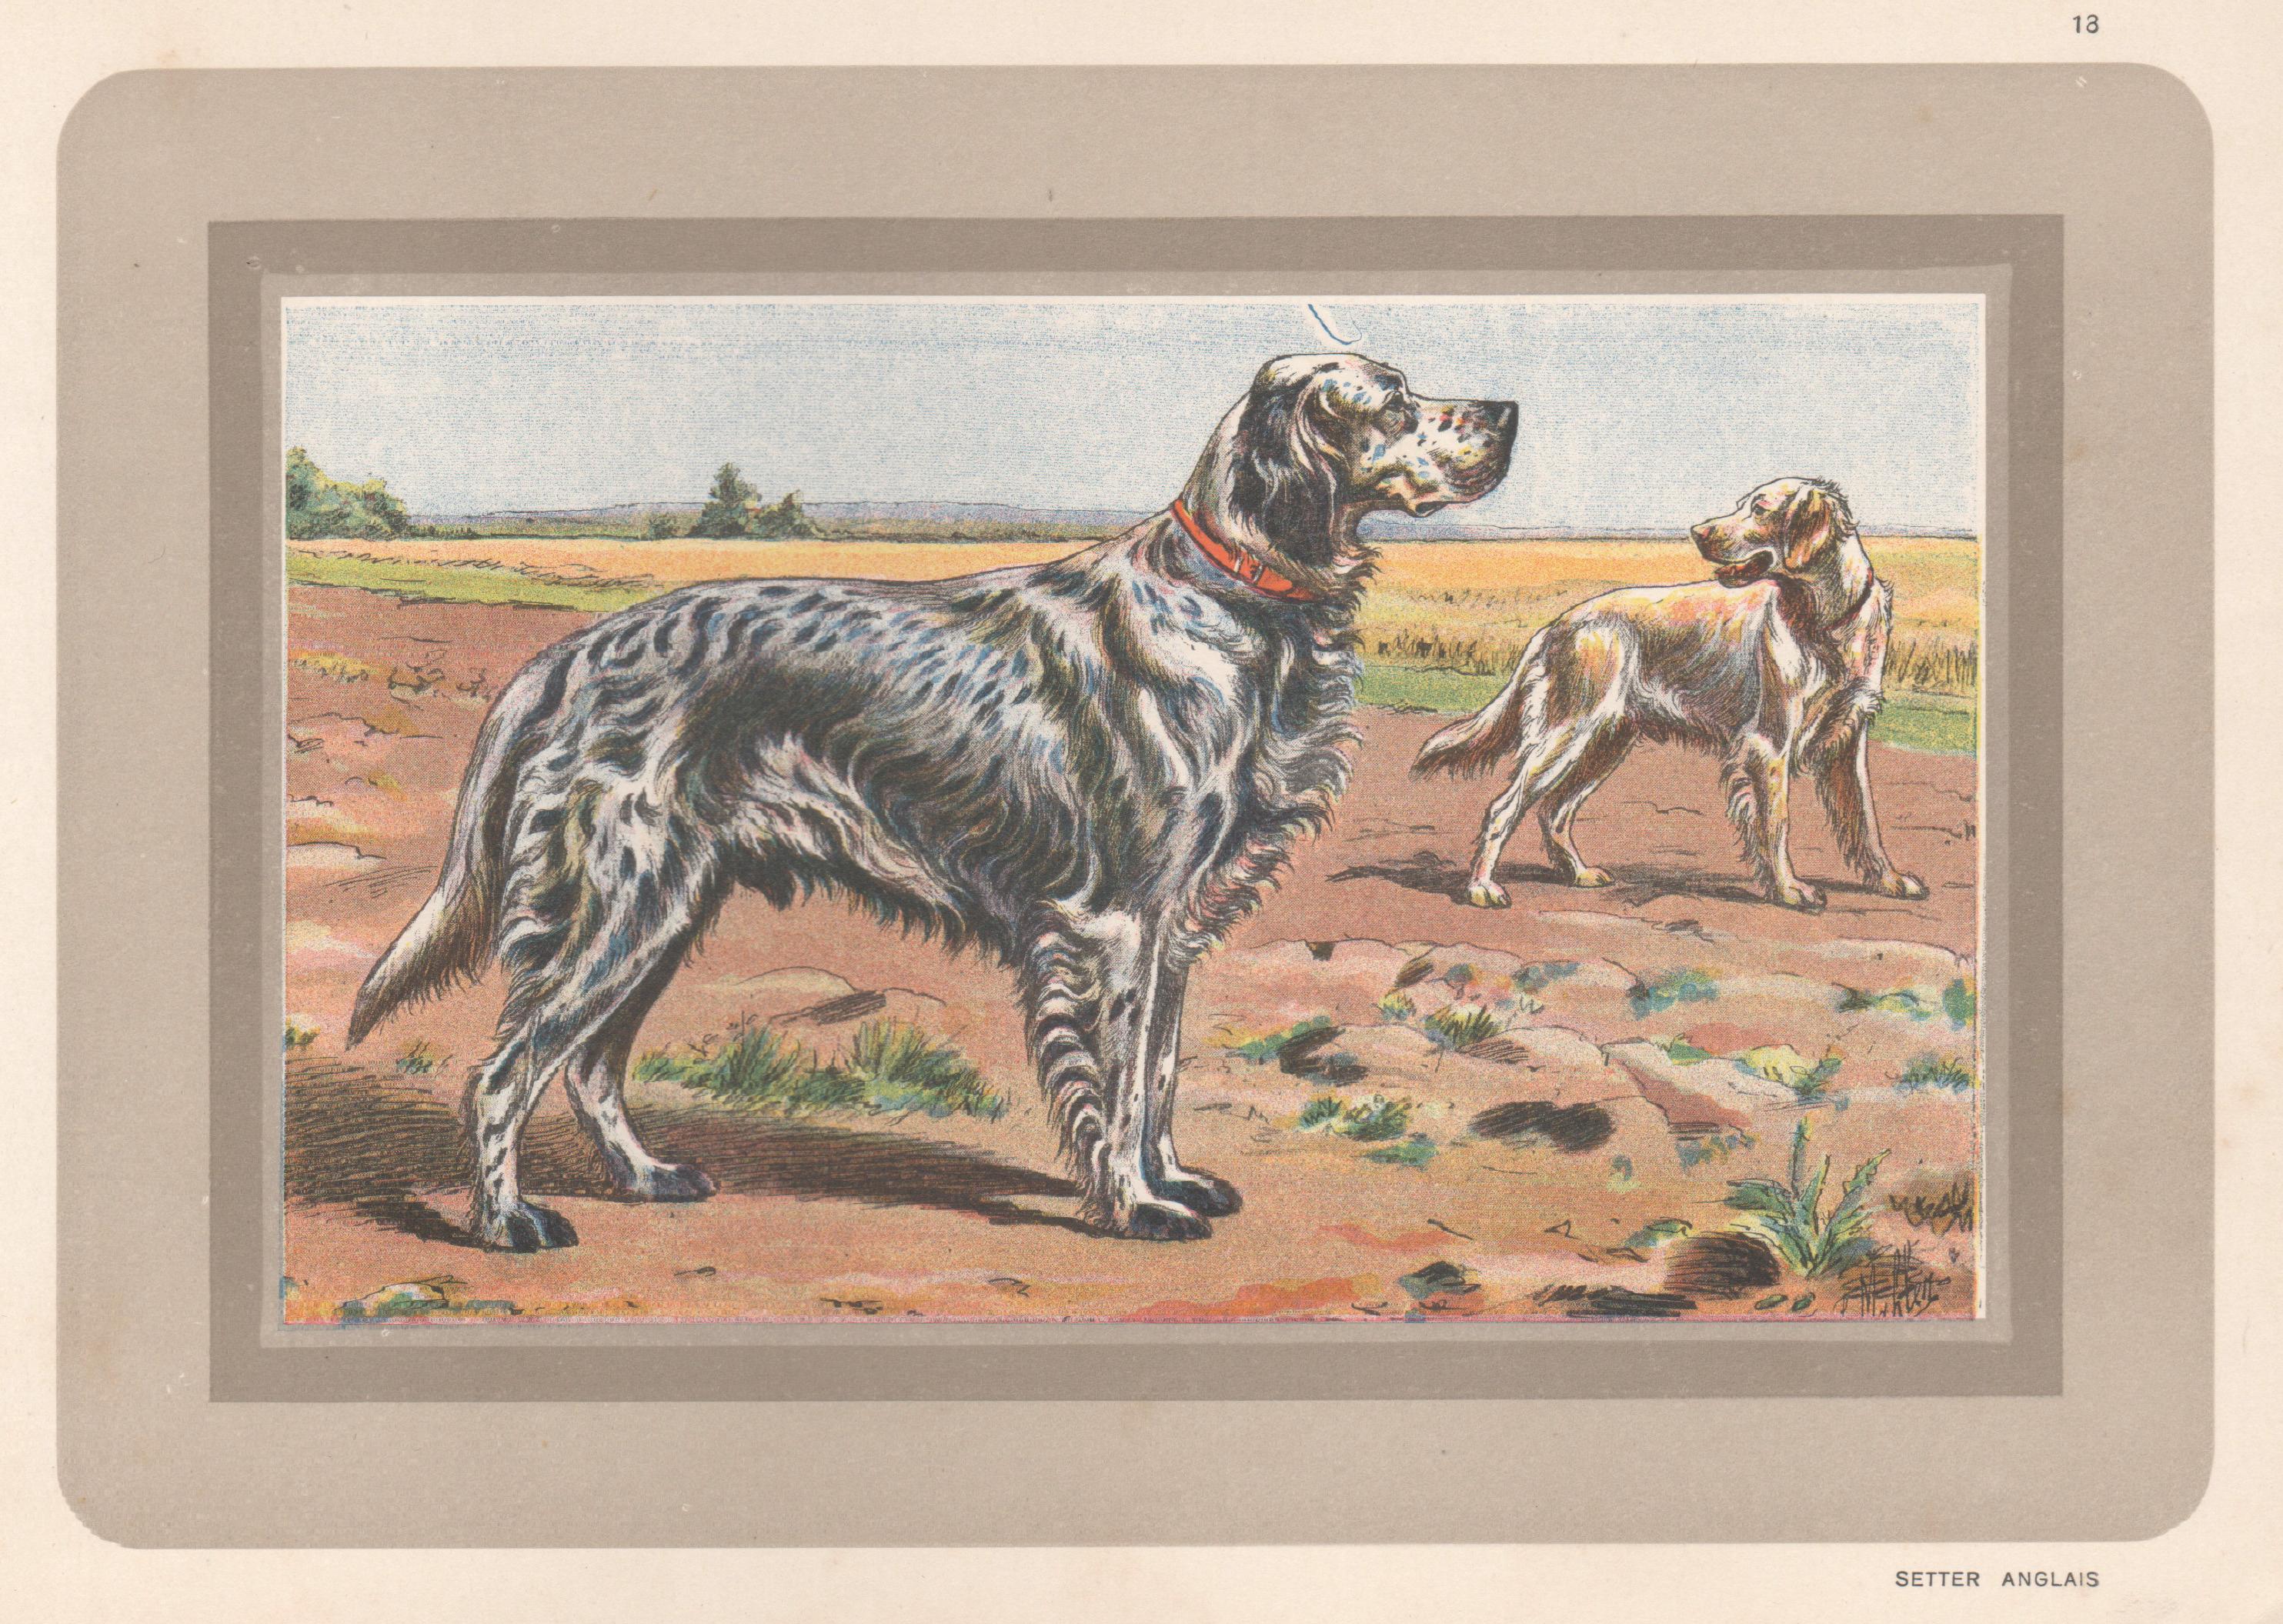 Animal Print P. Mahler - English Setter, impression chromolithographie française d'un chien de chasse, 1931